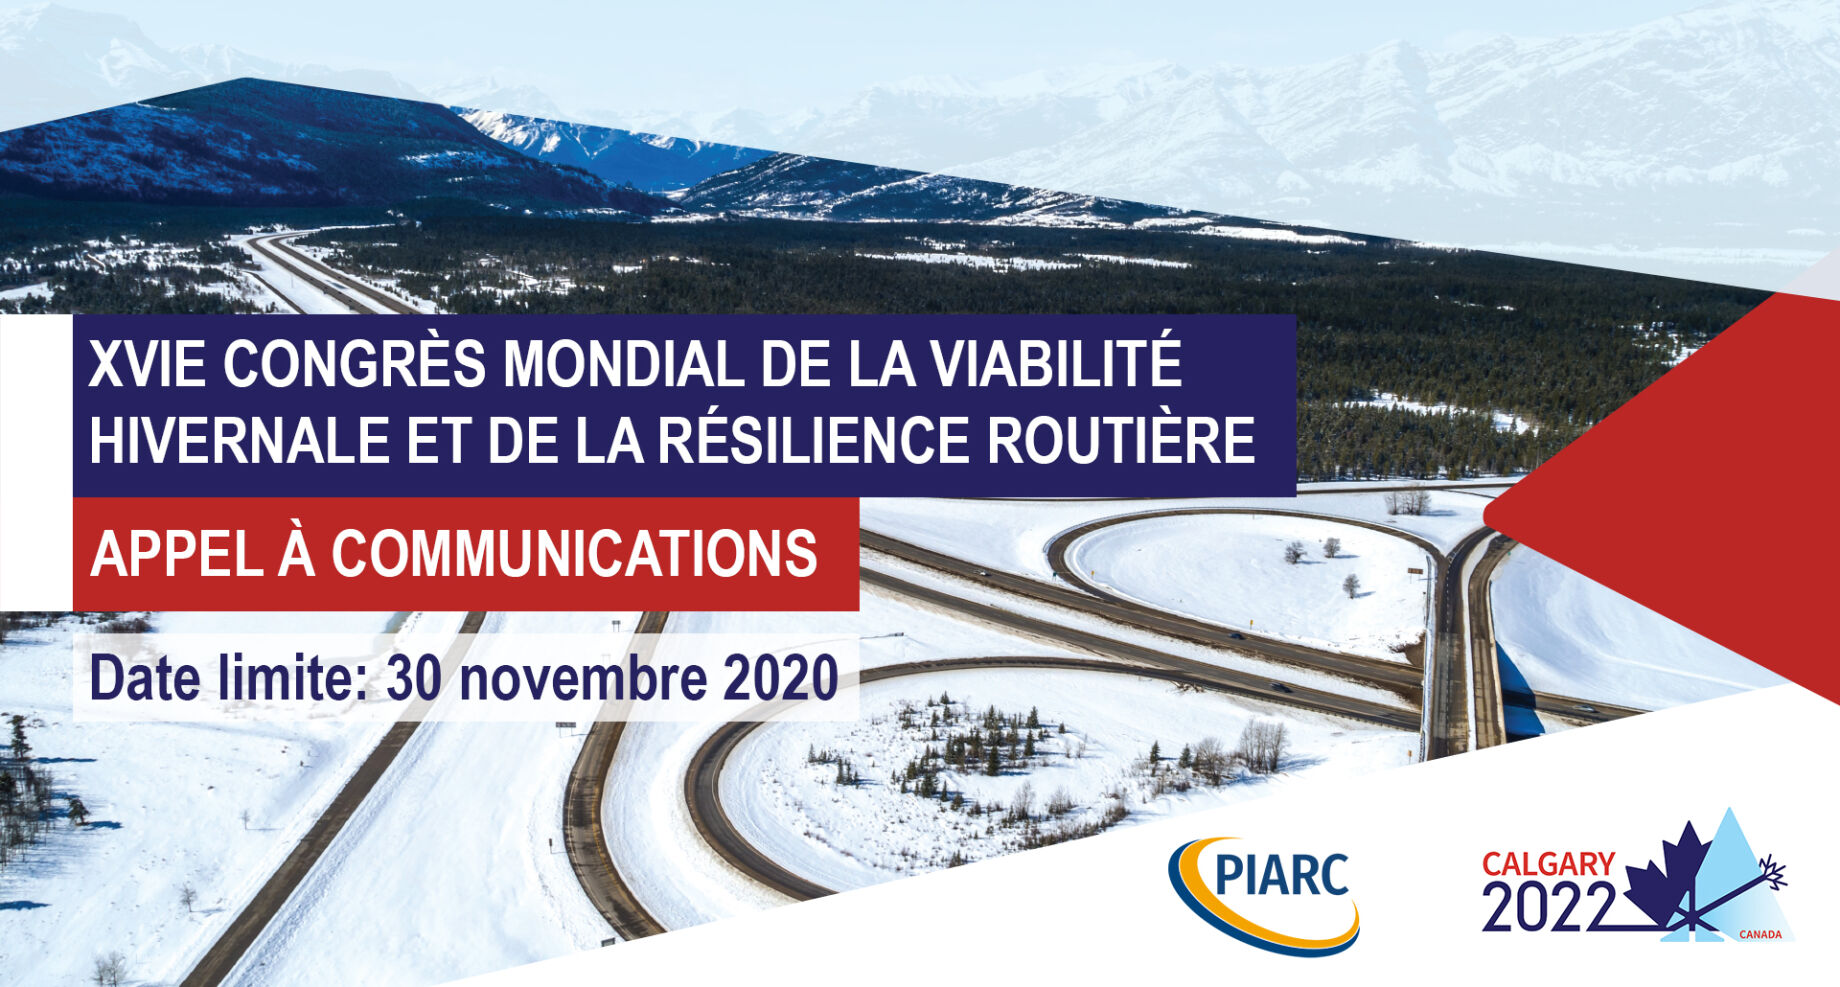 Soumettez votre résumé
avant le 30 novembre 2020 et contribuez au prochain Congrès mondial de PIARC
sur la viabilité hivernale et la résilience routière !